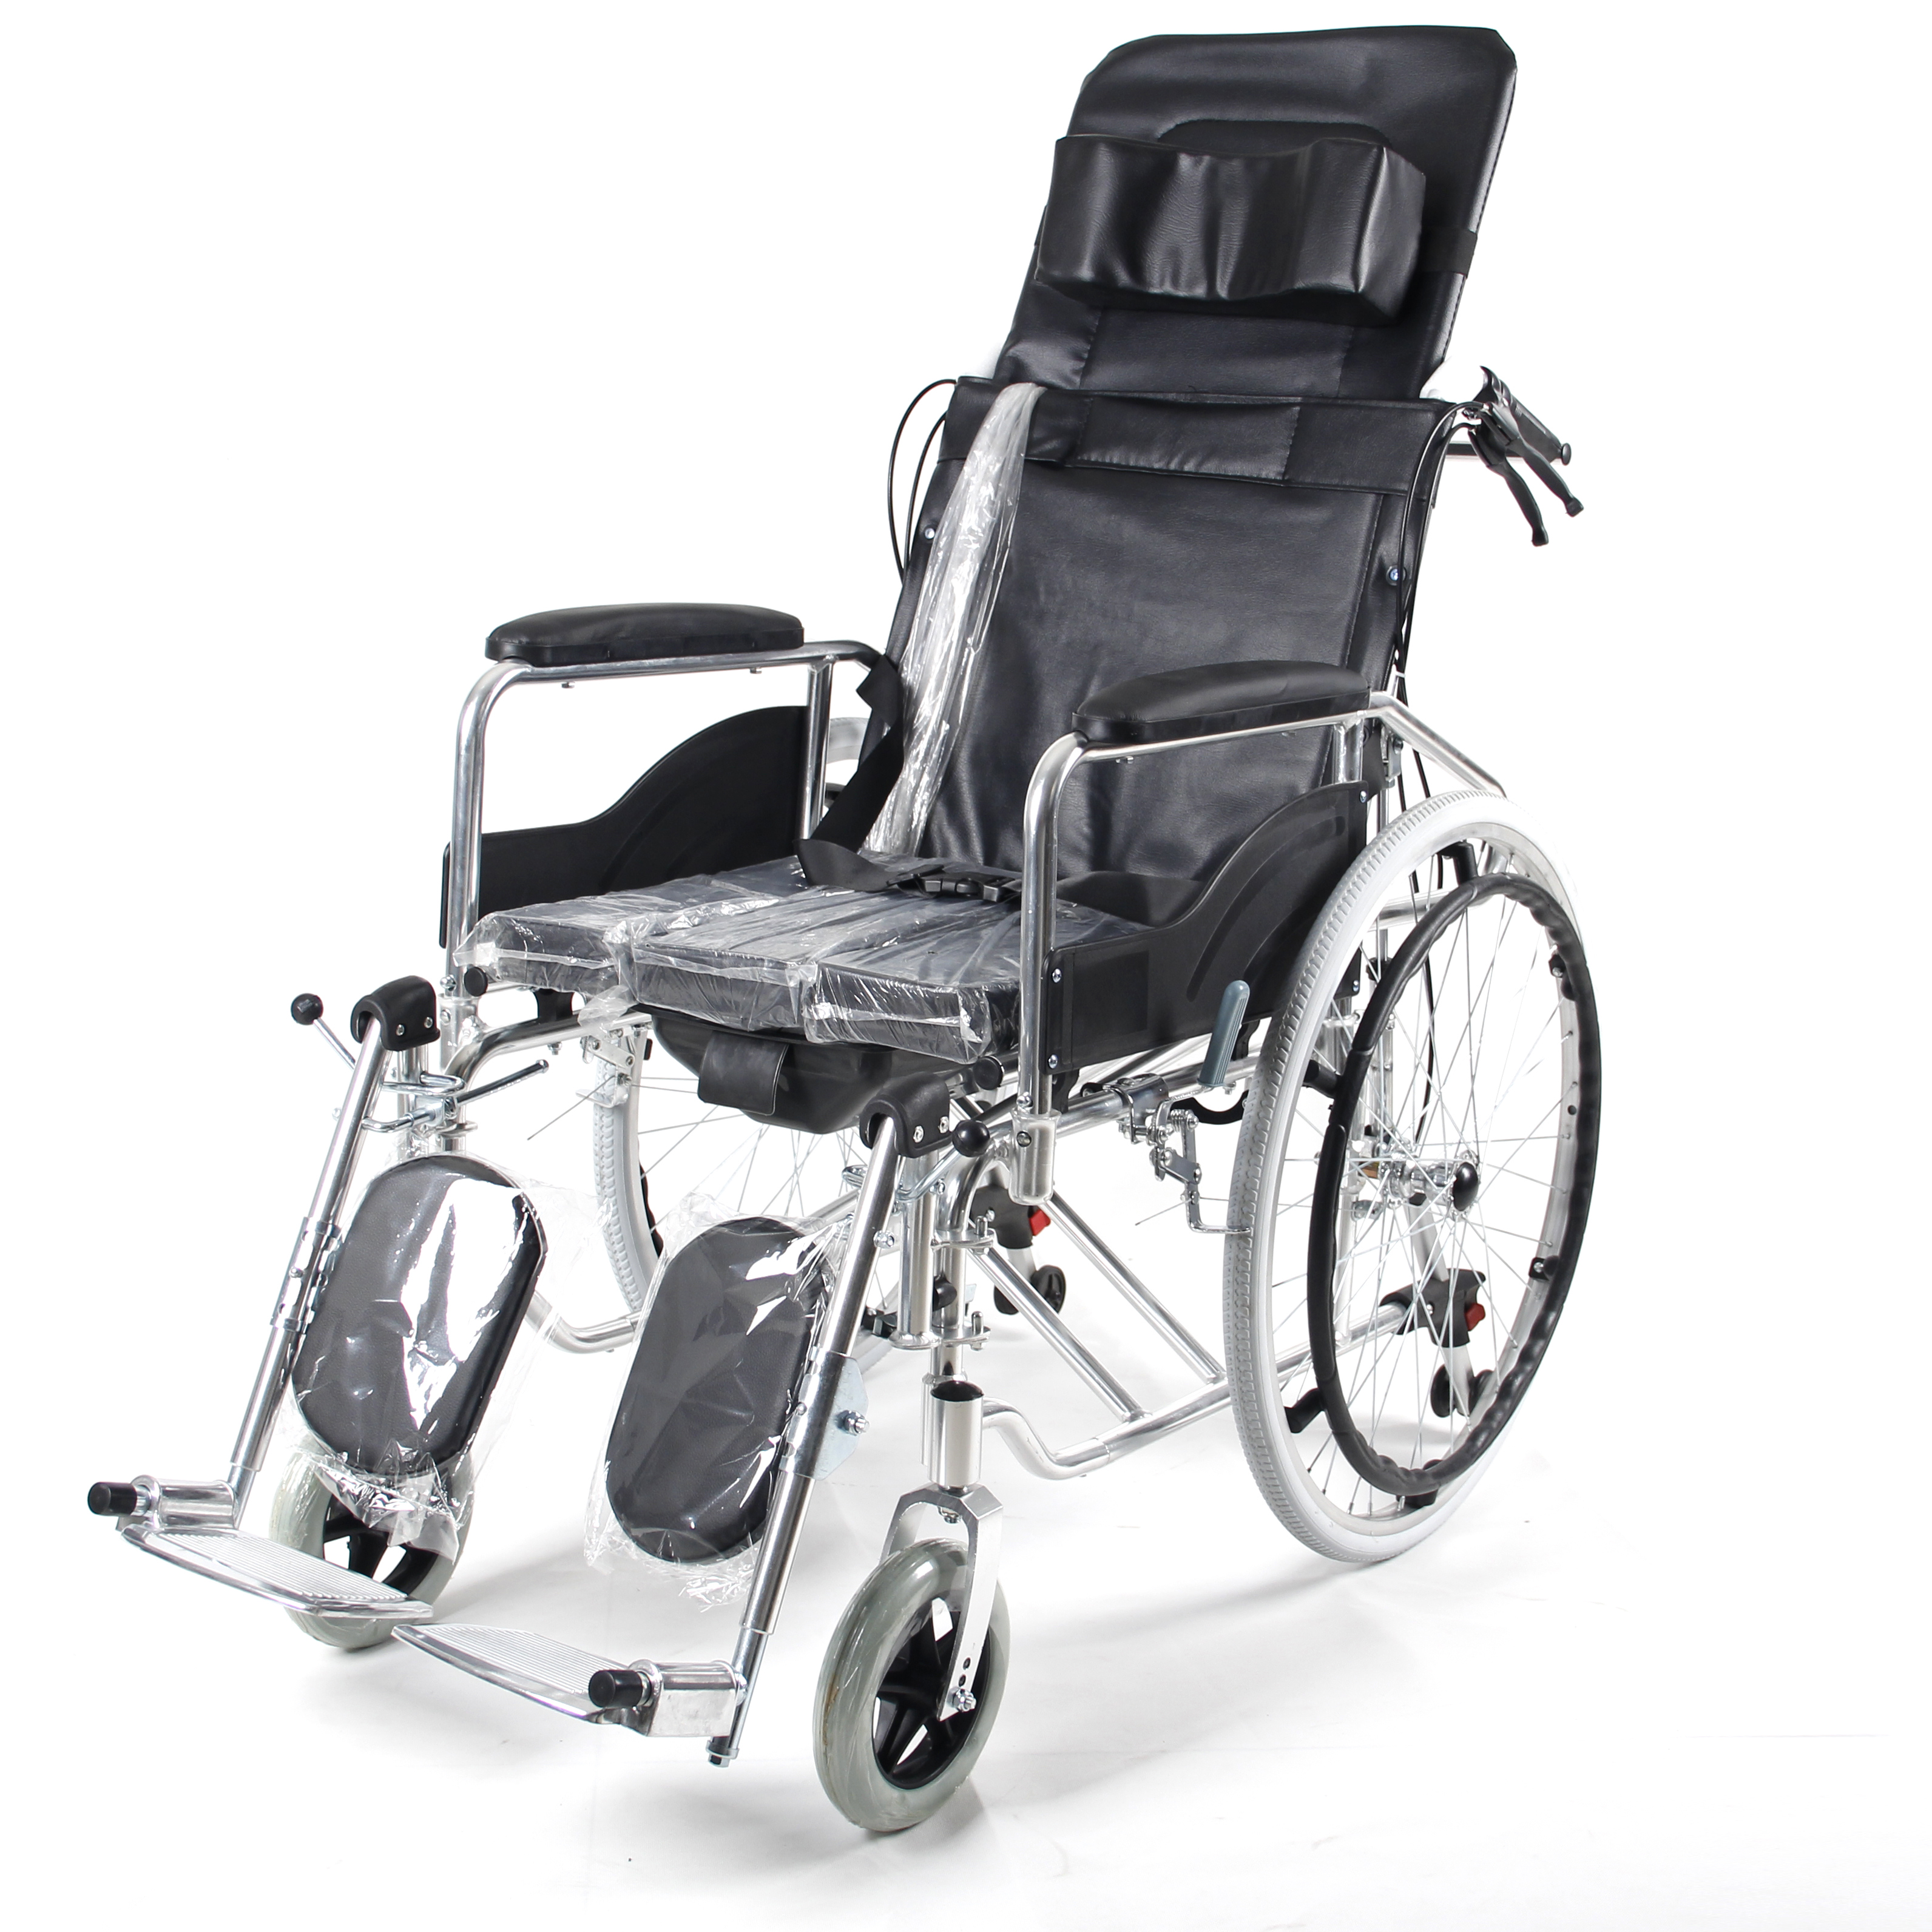 Complicatio multifunctional manual portatile wheelchair